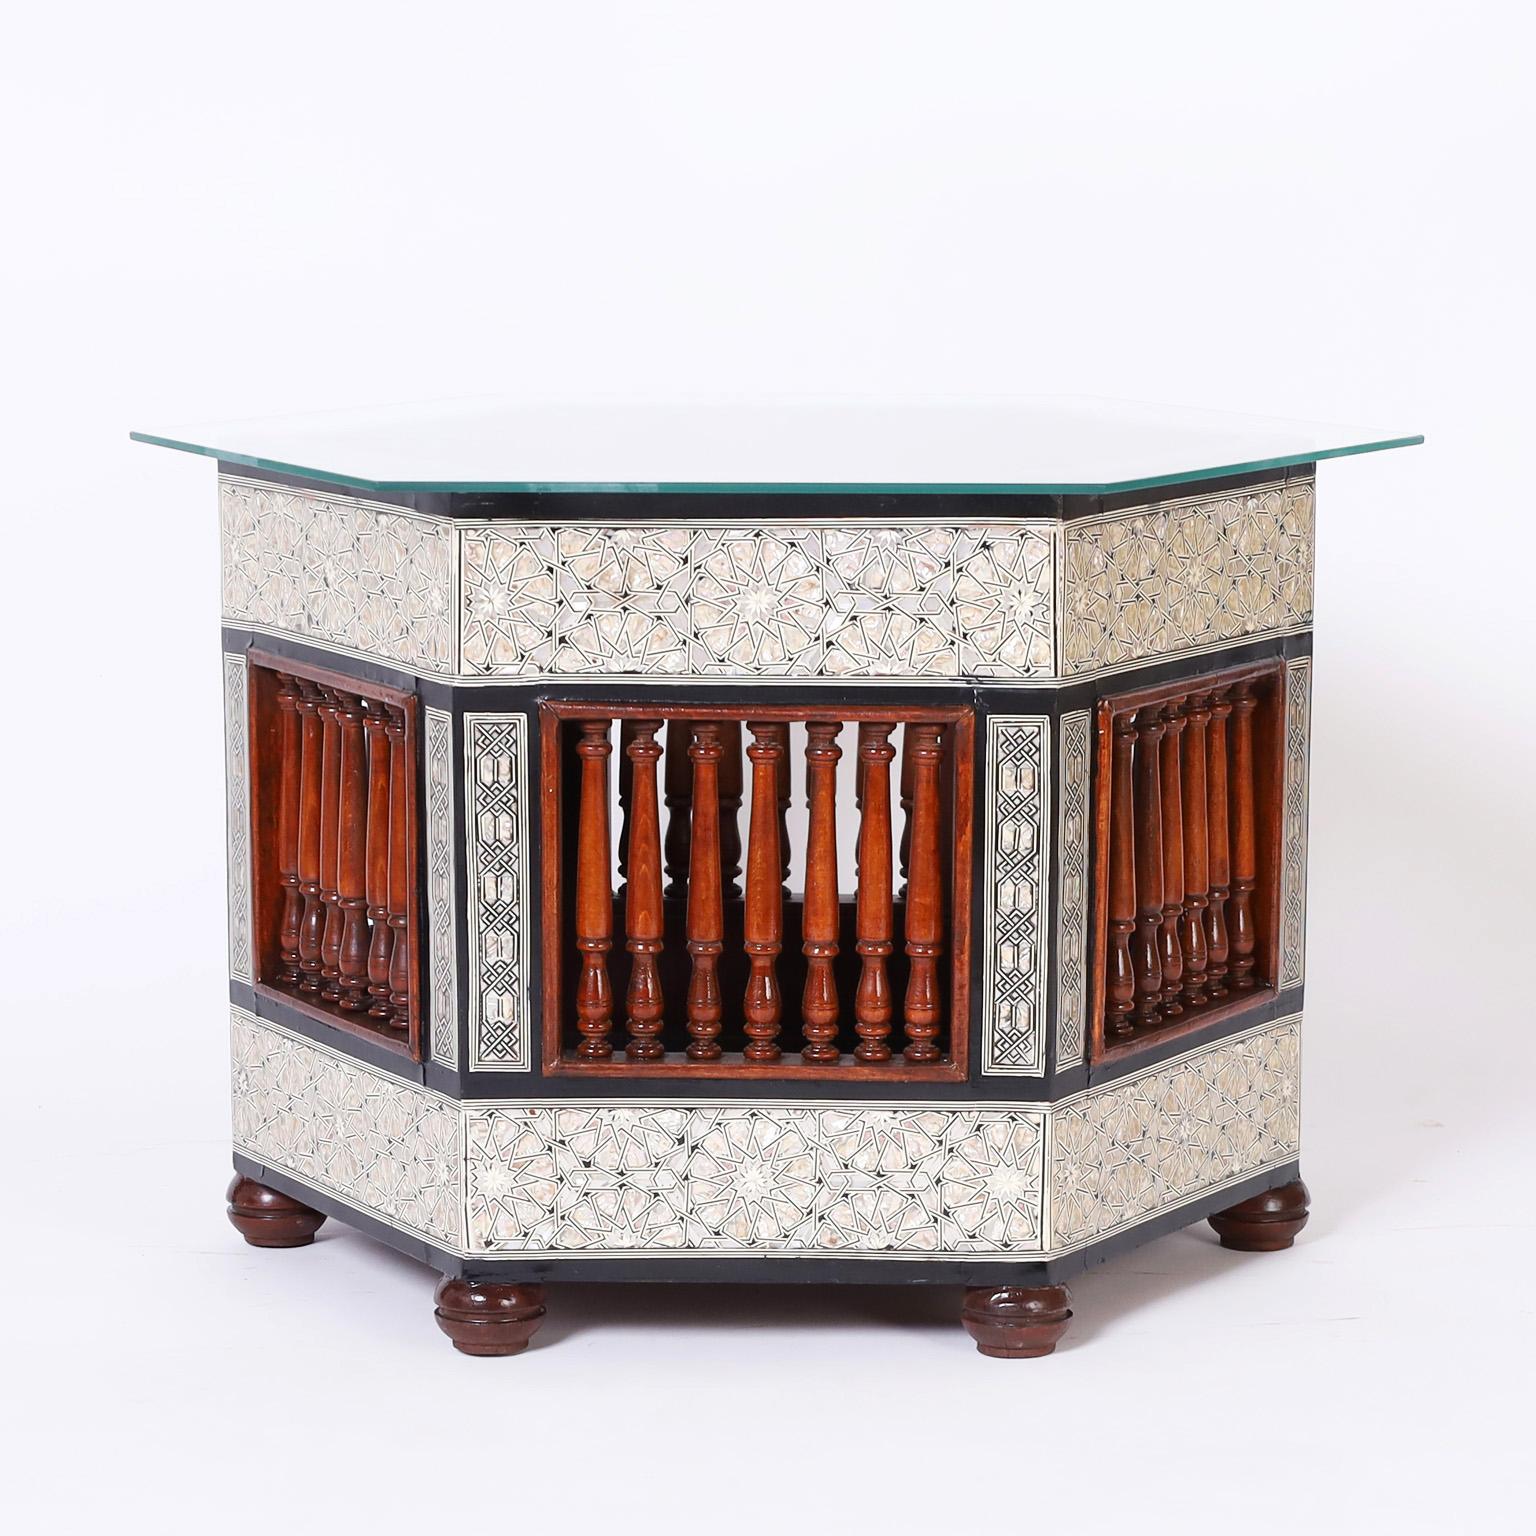 Zwei nahöstliche Tische oder Ständer aus einheimischen Harthölzern, früher Pflanzgefäße, heute Tische mit kunstvollen Einlegearbeiten aus Perlmutt und Ebenholz in geometrischen Mustern und gedrechselten Mahagoni-Balustraden.